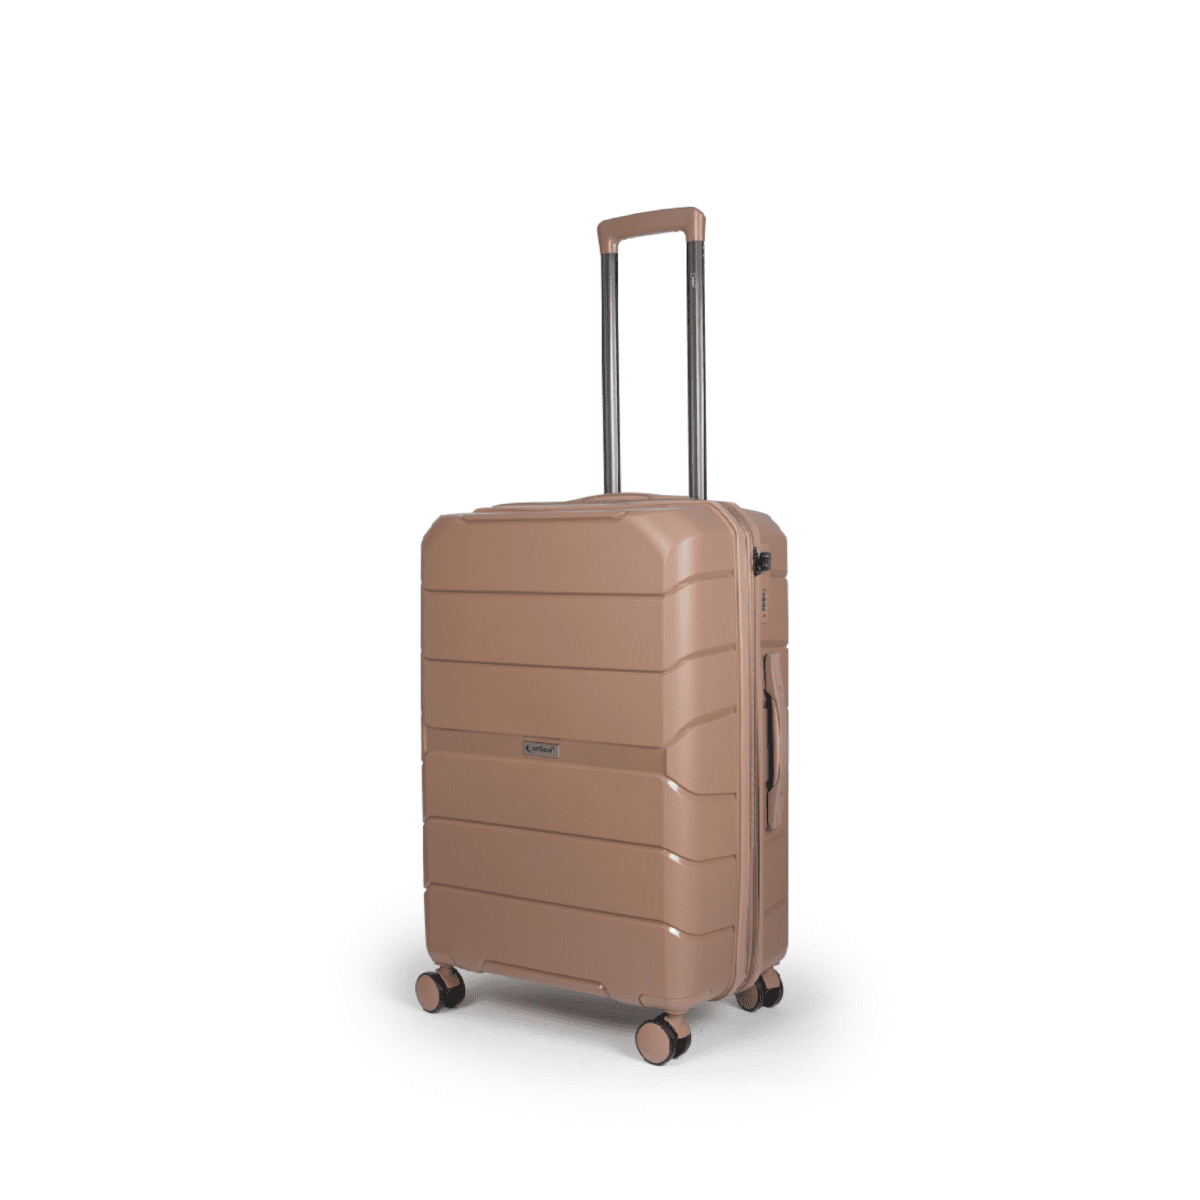 Βαλίτσα χειραποσκευή με tsa lock διπλά ροδάκια από πολυπροπυλένιο άθραυστο υλικό σε ροζ χρώμα